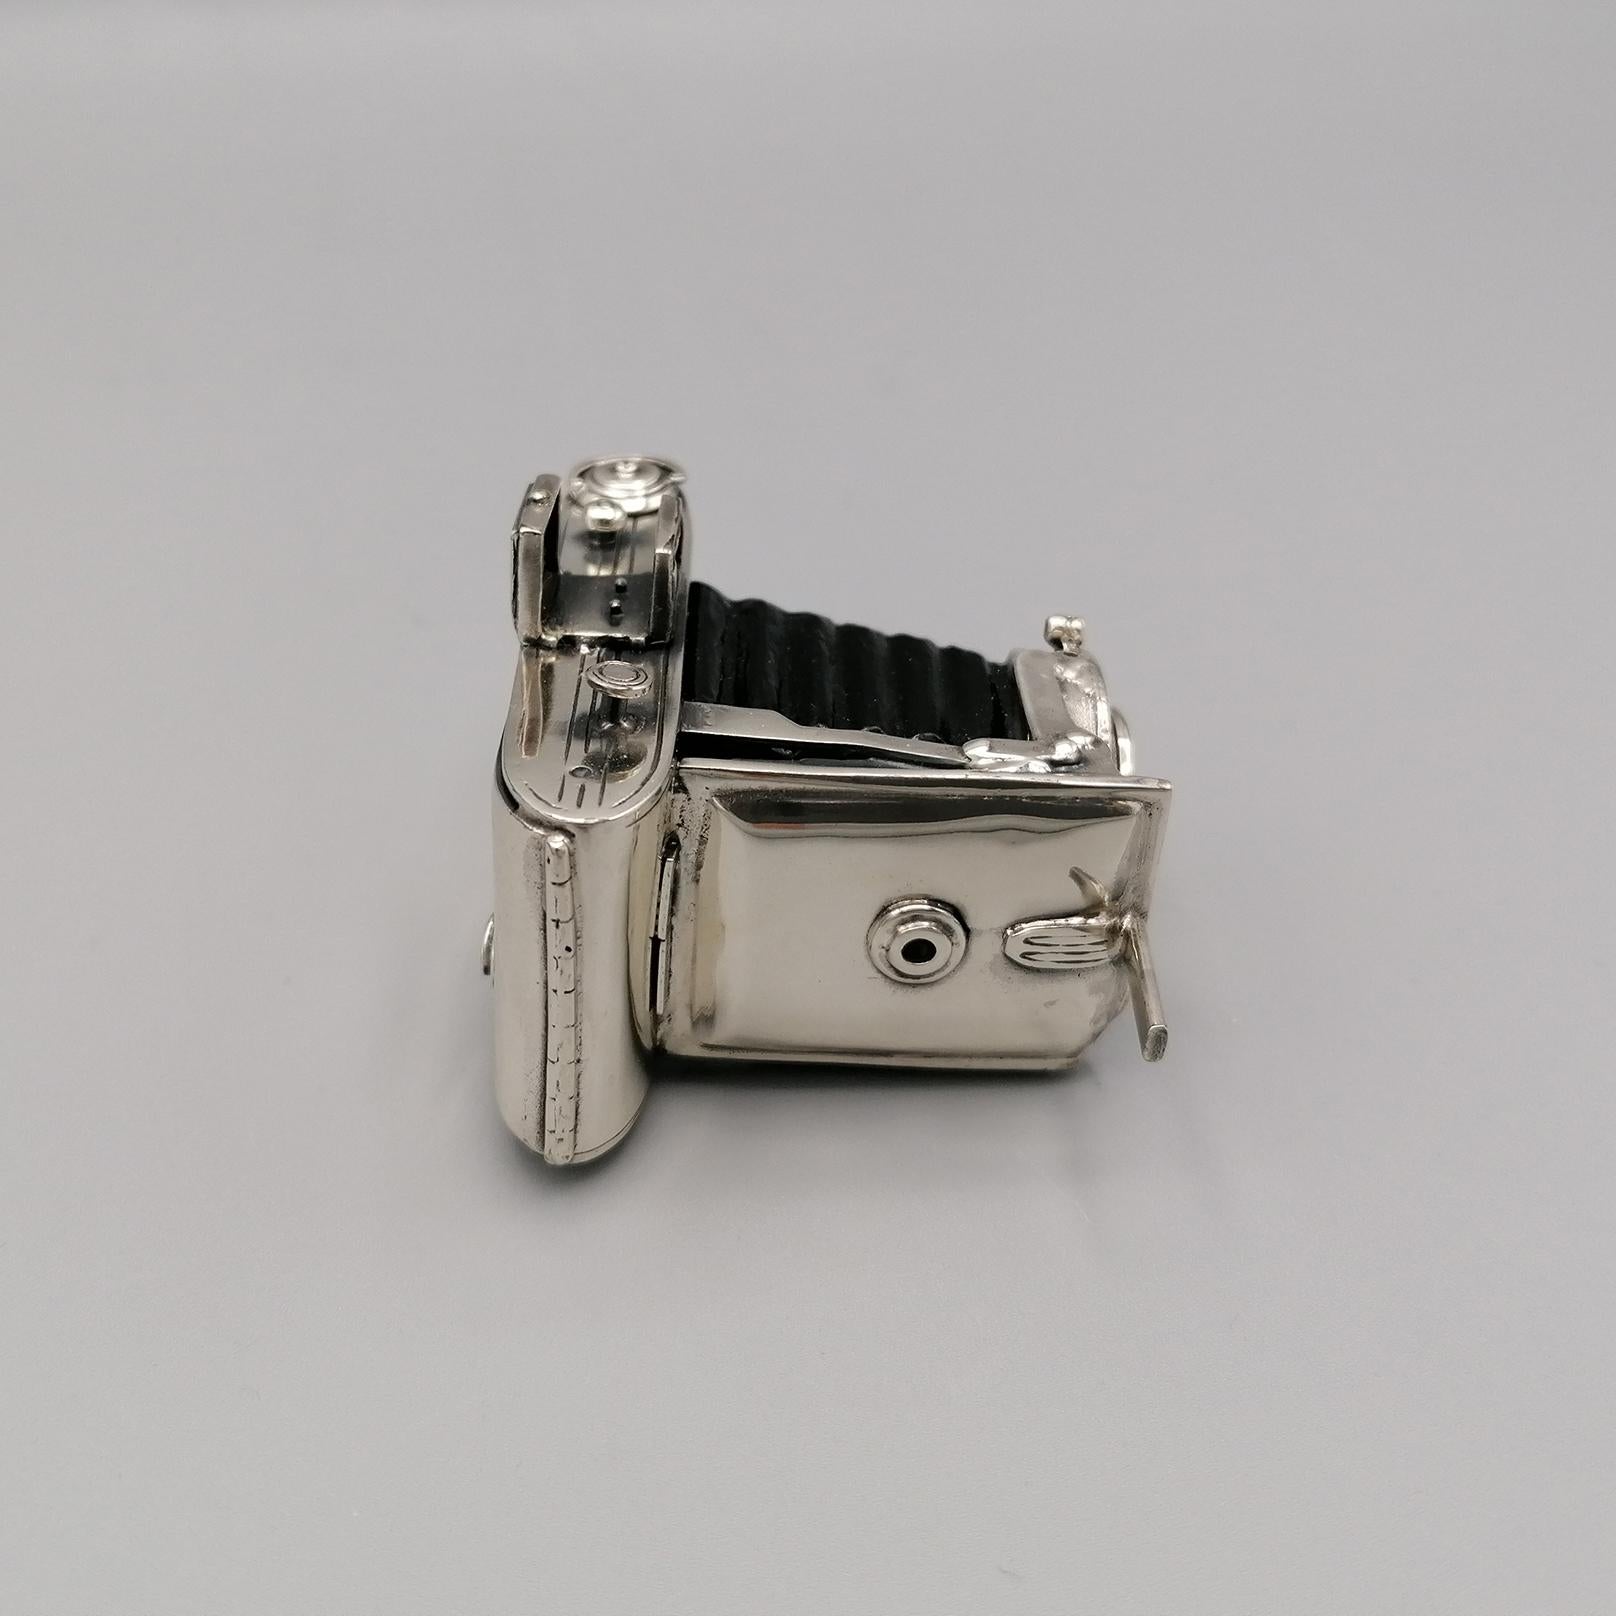 Miniaturkamera aus Sterlingsilber.
Vollständig handgefertigt und 